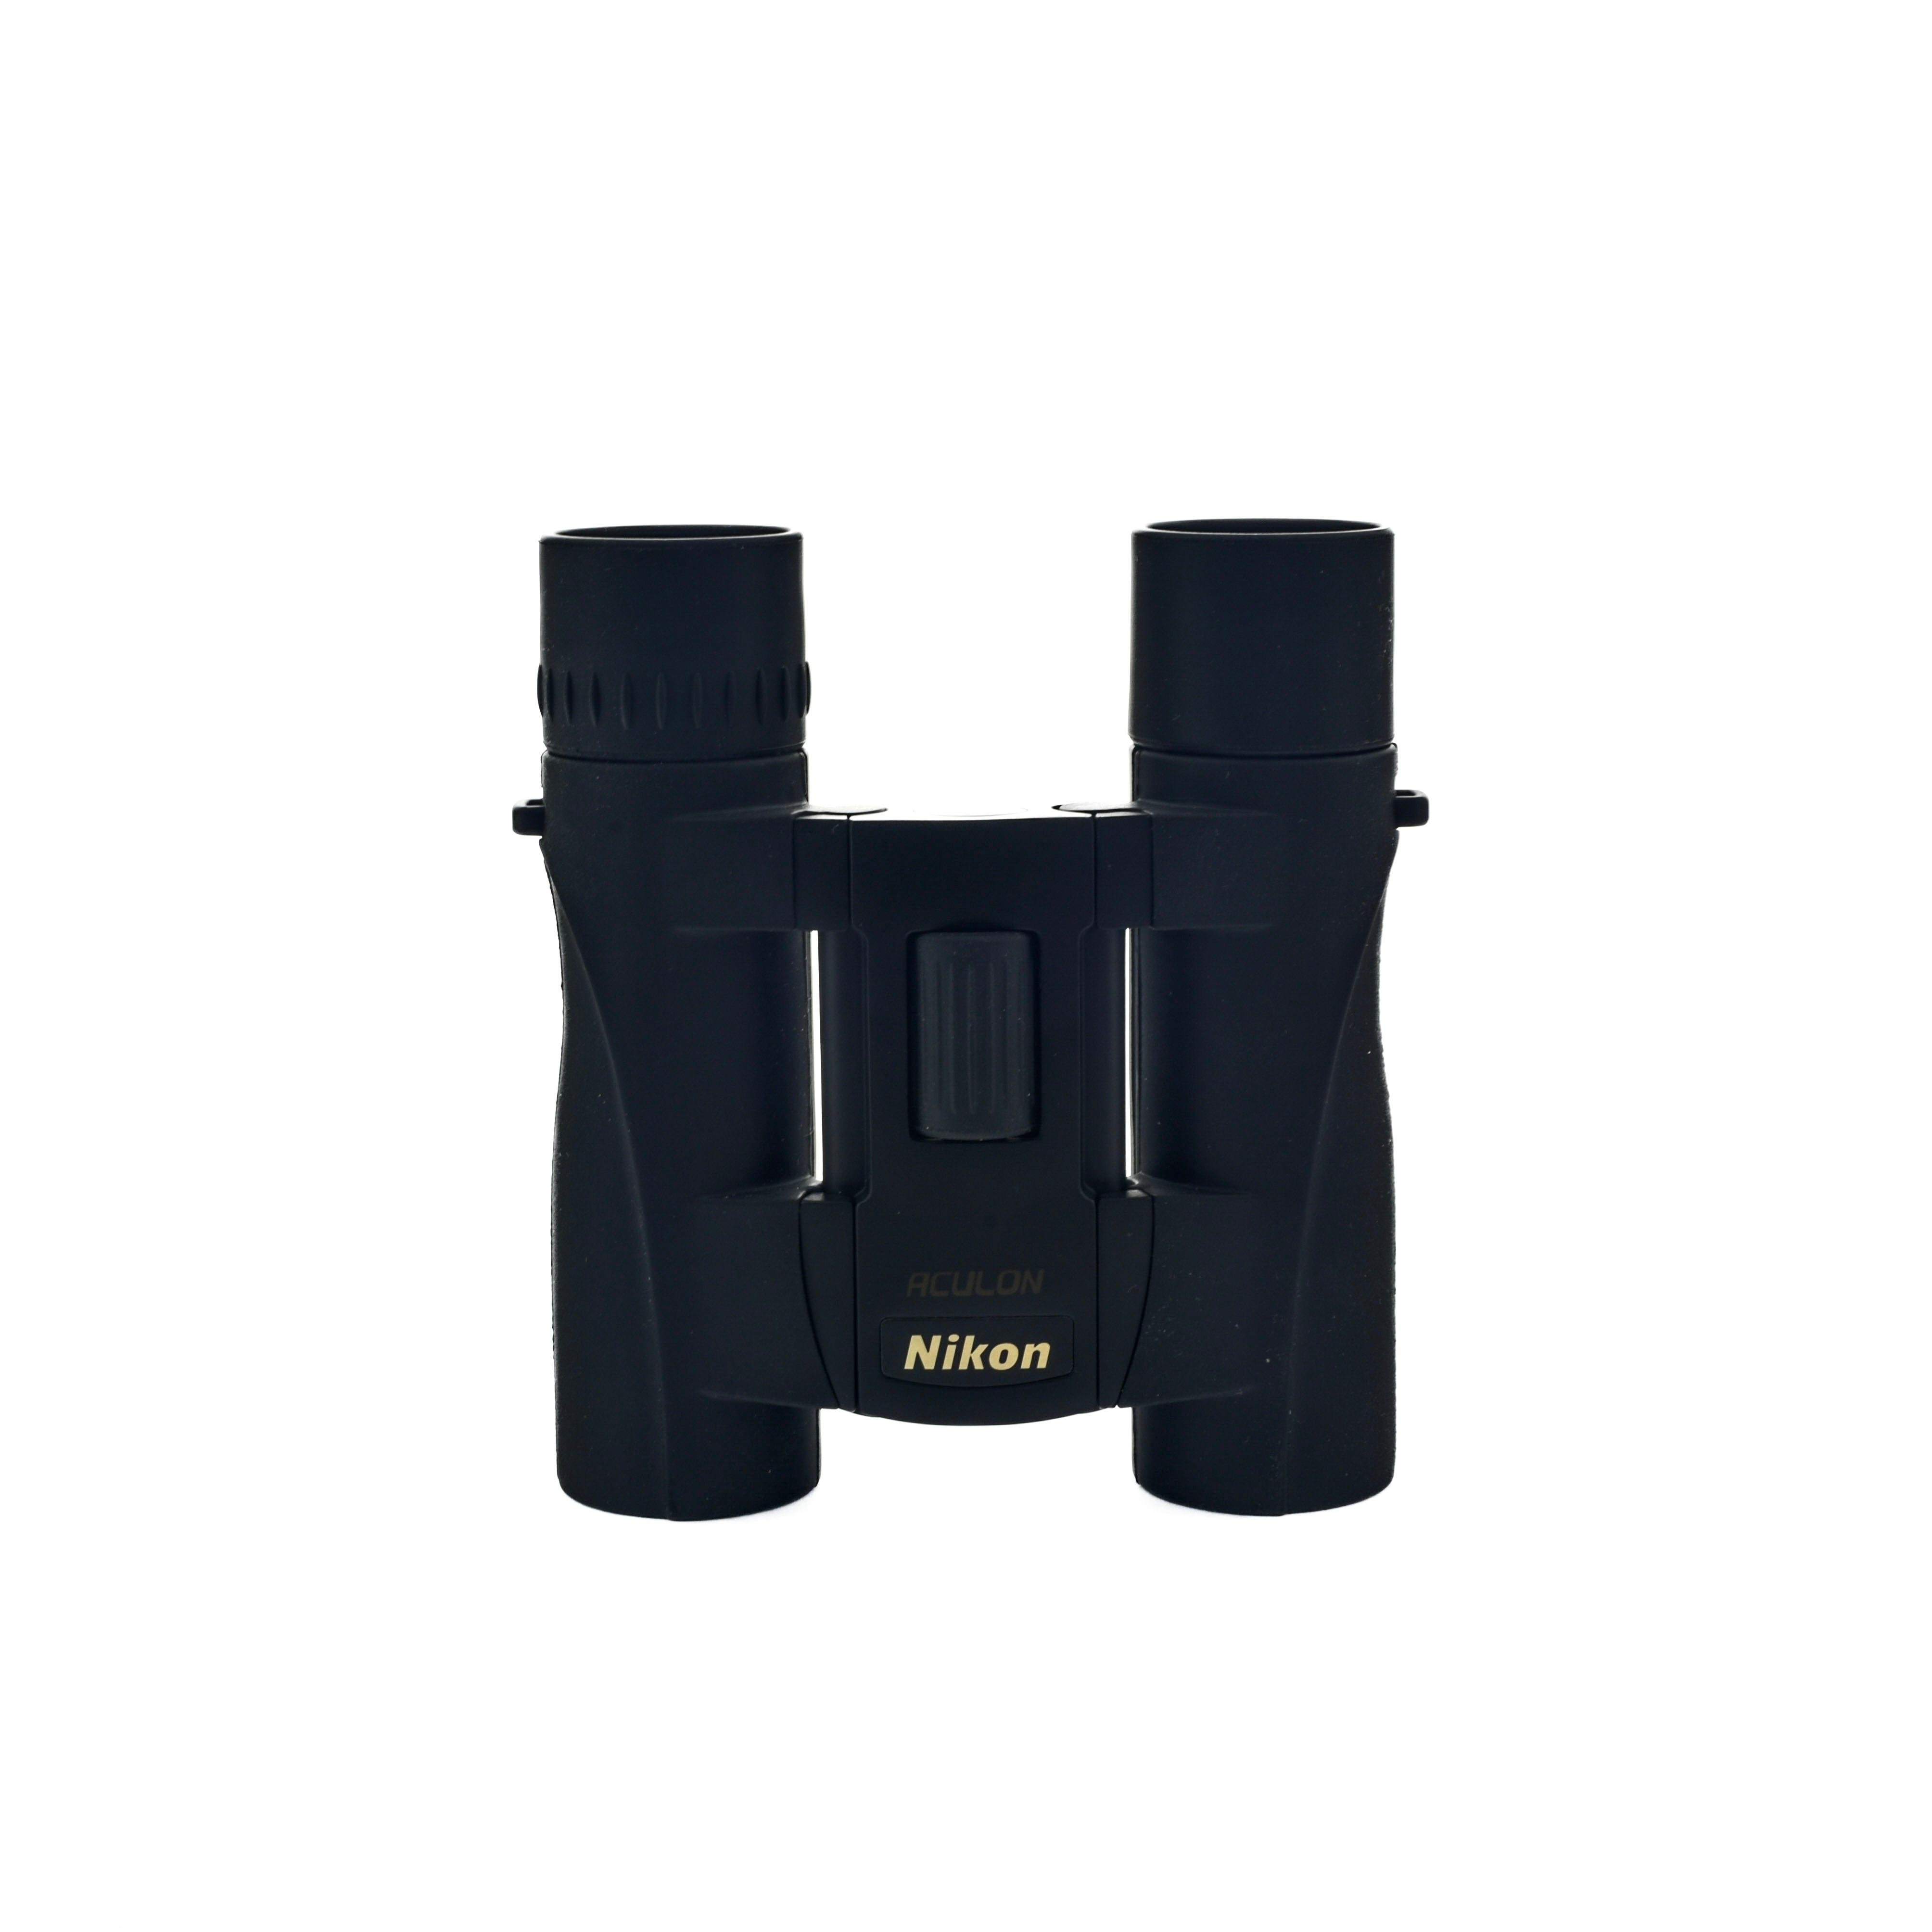 Nikon Aculon8x25 Binoculars (Black)